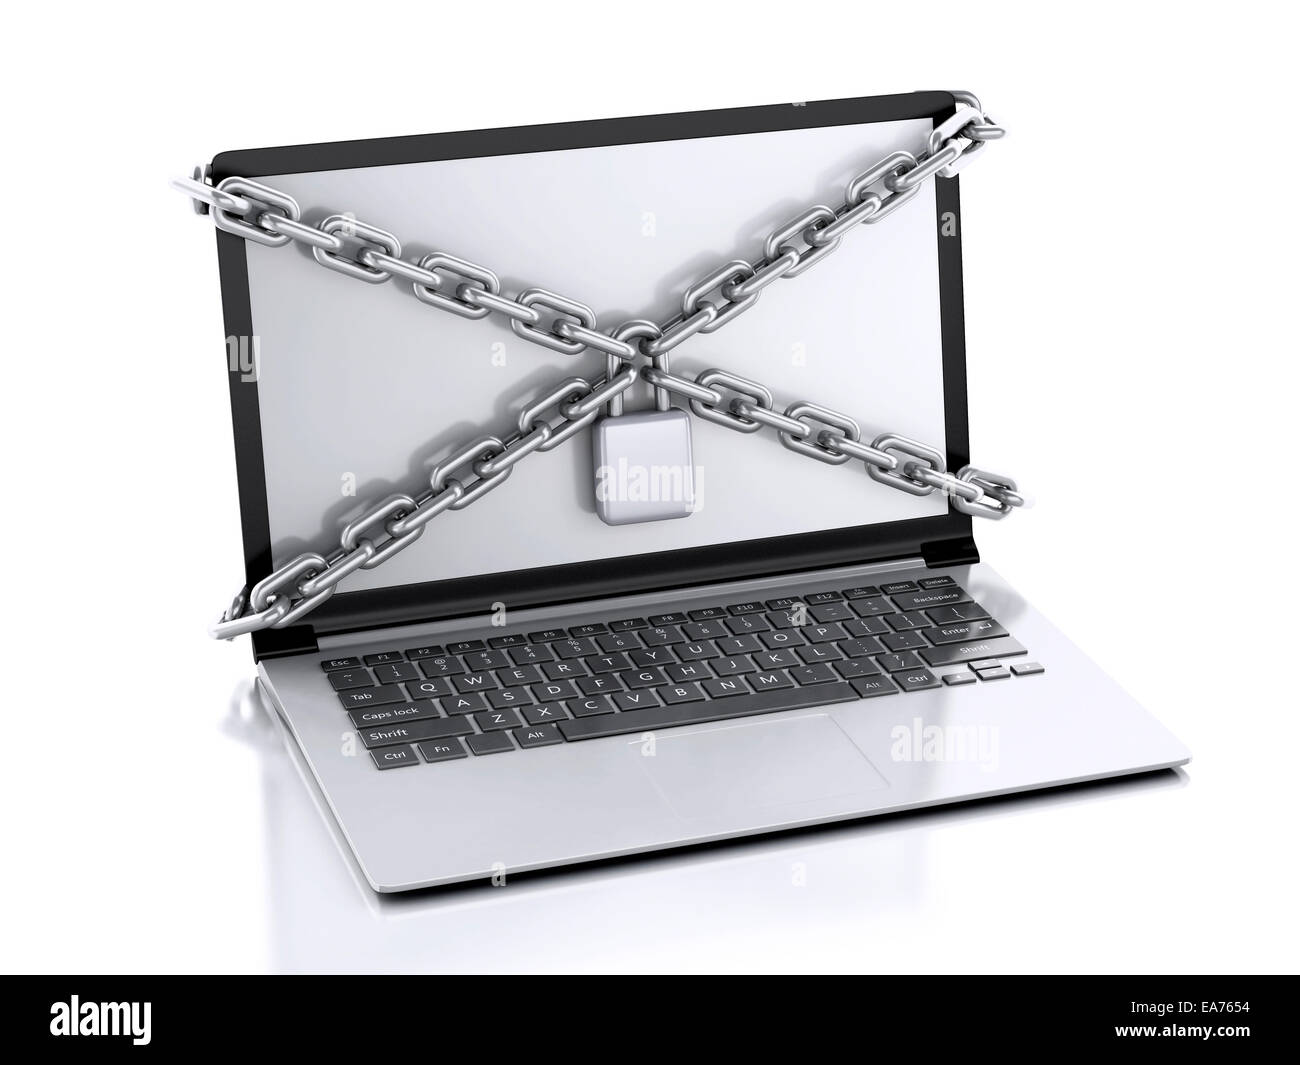 Image de l'ordinateur portable avec lock et la chaîne. Concept de sécurité des données.. 3d illustration Banque D'Images